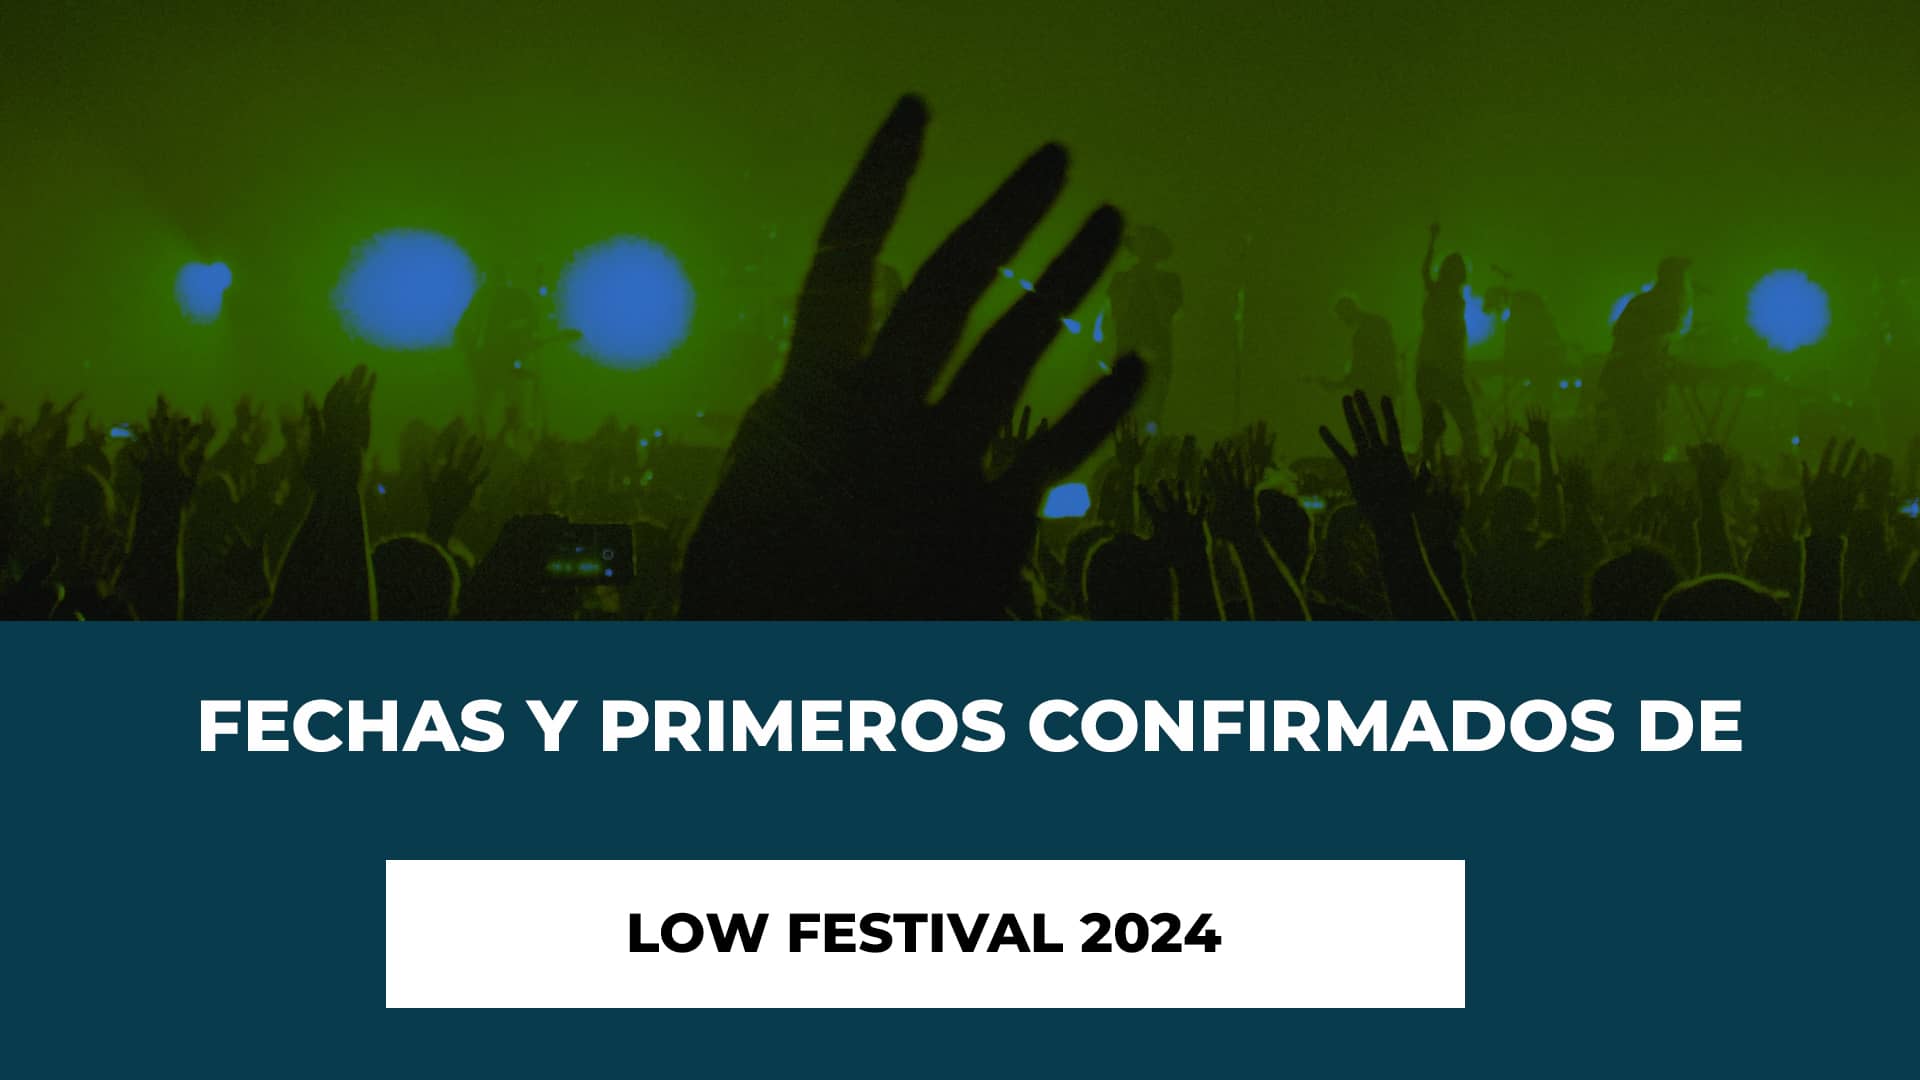 Fechas y Primeros confirmados de Low Festival 2024 - Guarda las Fechas - Los Primeros Confirmados - Entradas Ya Disponibles